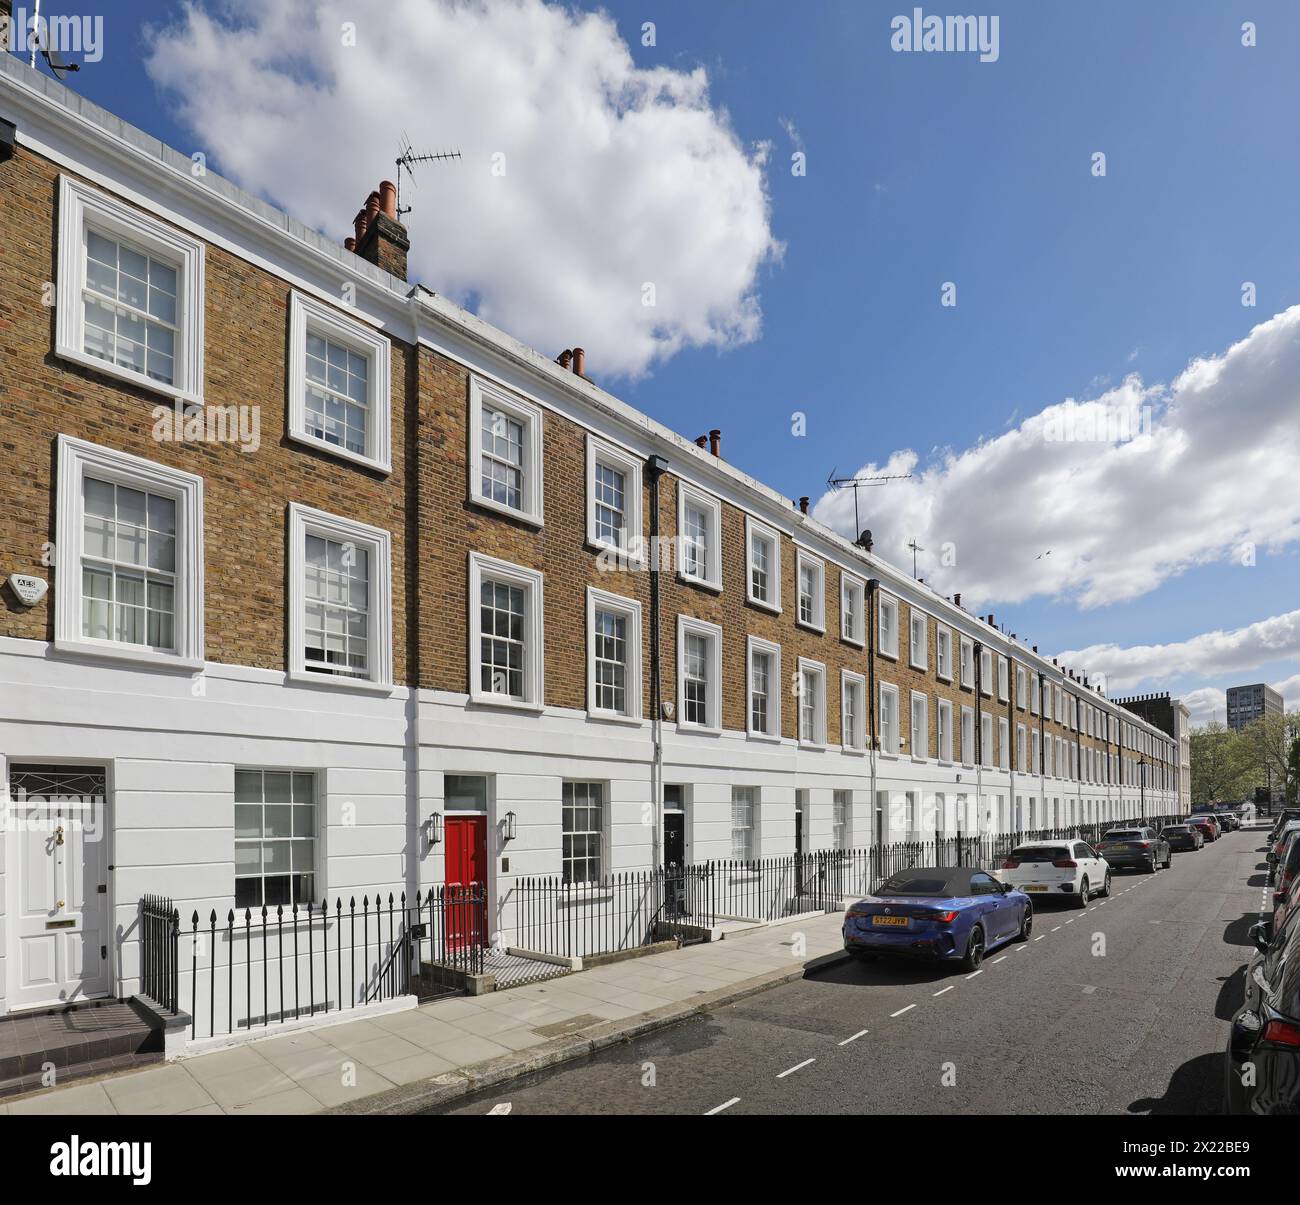 Elegante Reihenhäuser im Regency-Stil am Ponsonby Place im Londoner Stadtteil Pimlico. Ein wohlhabendes Gebiet zwischen Westminster und Chelsea. Stockfoto